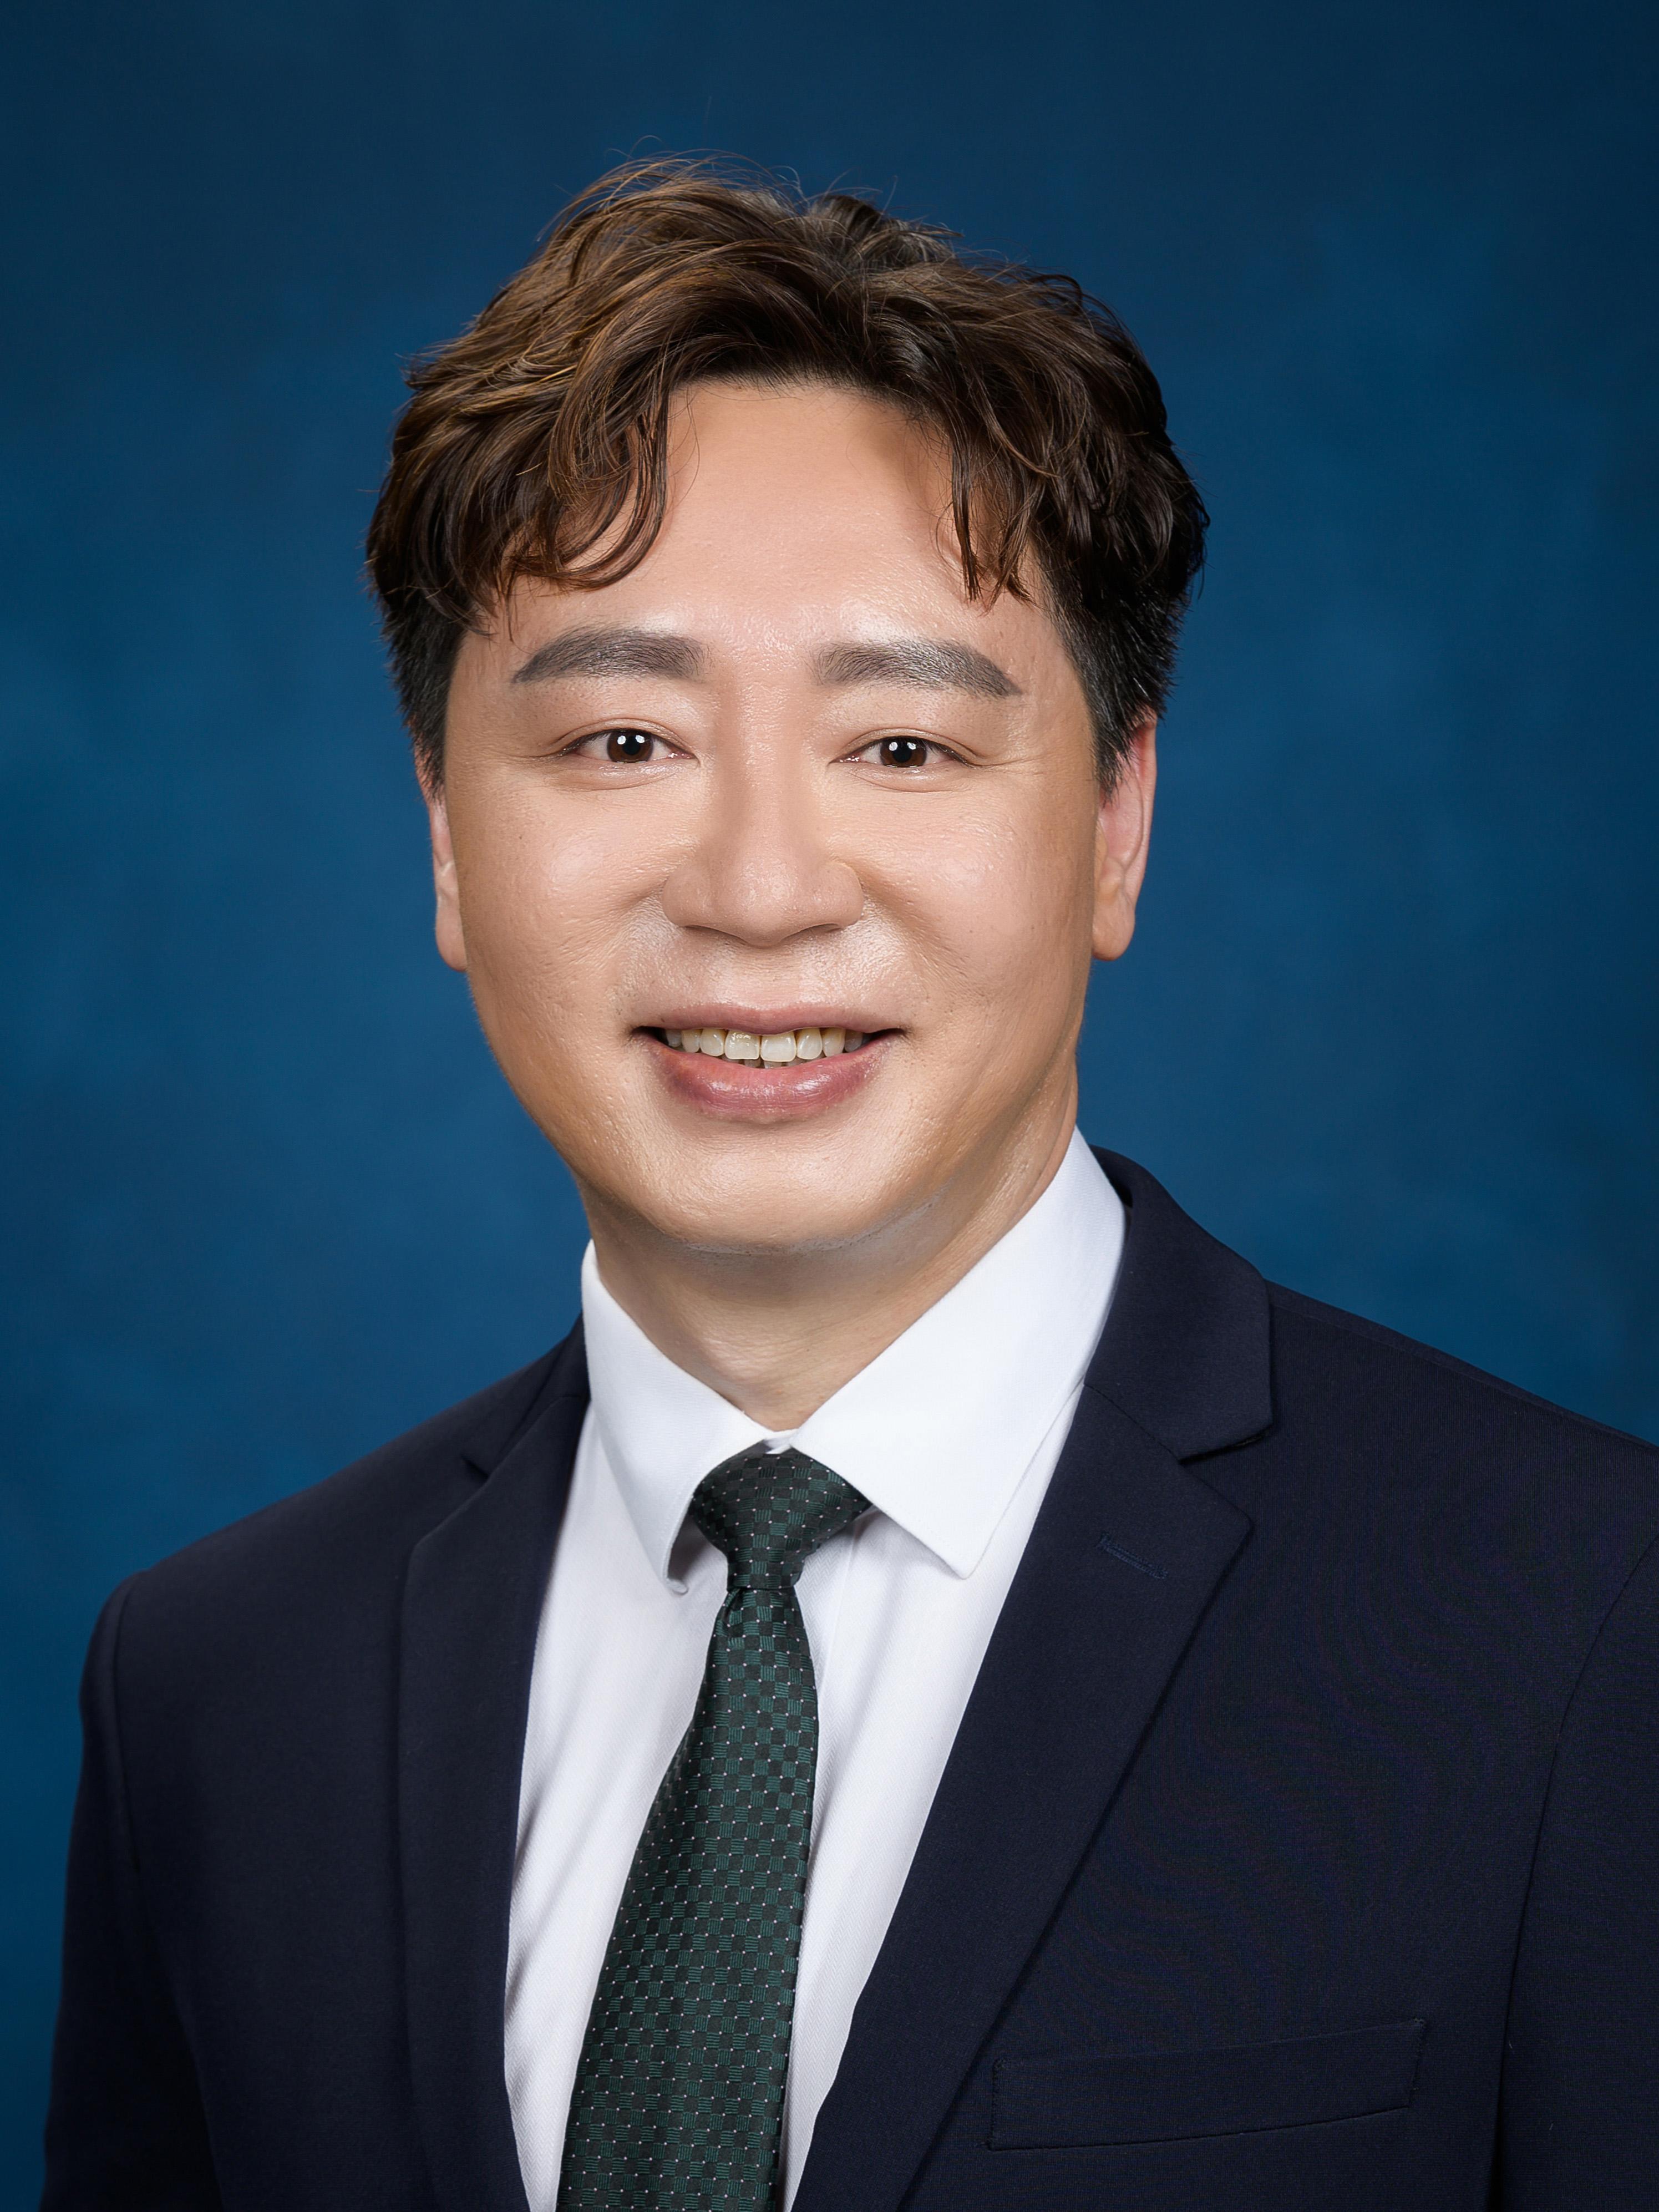 钟志豪博士将由五月二十日起出任中医药发展专员。